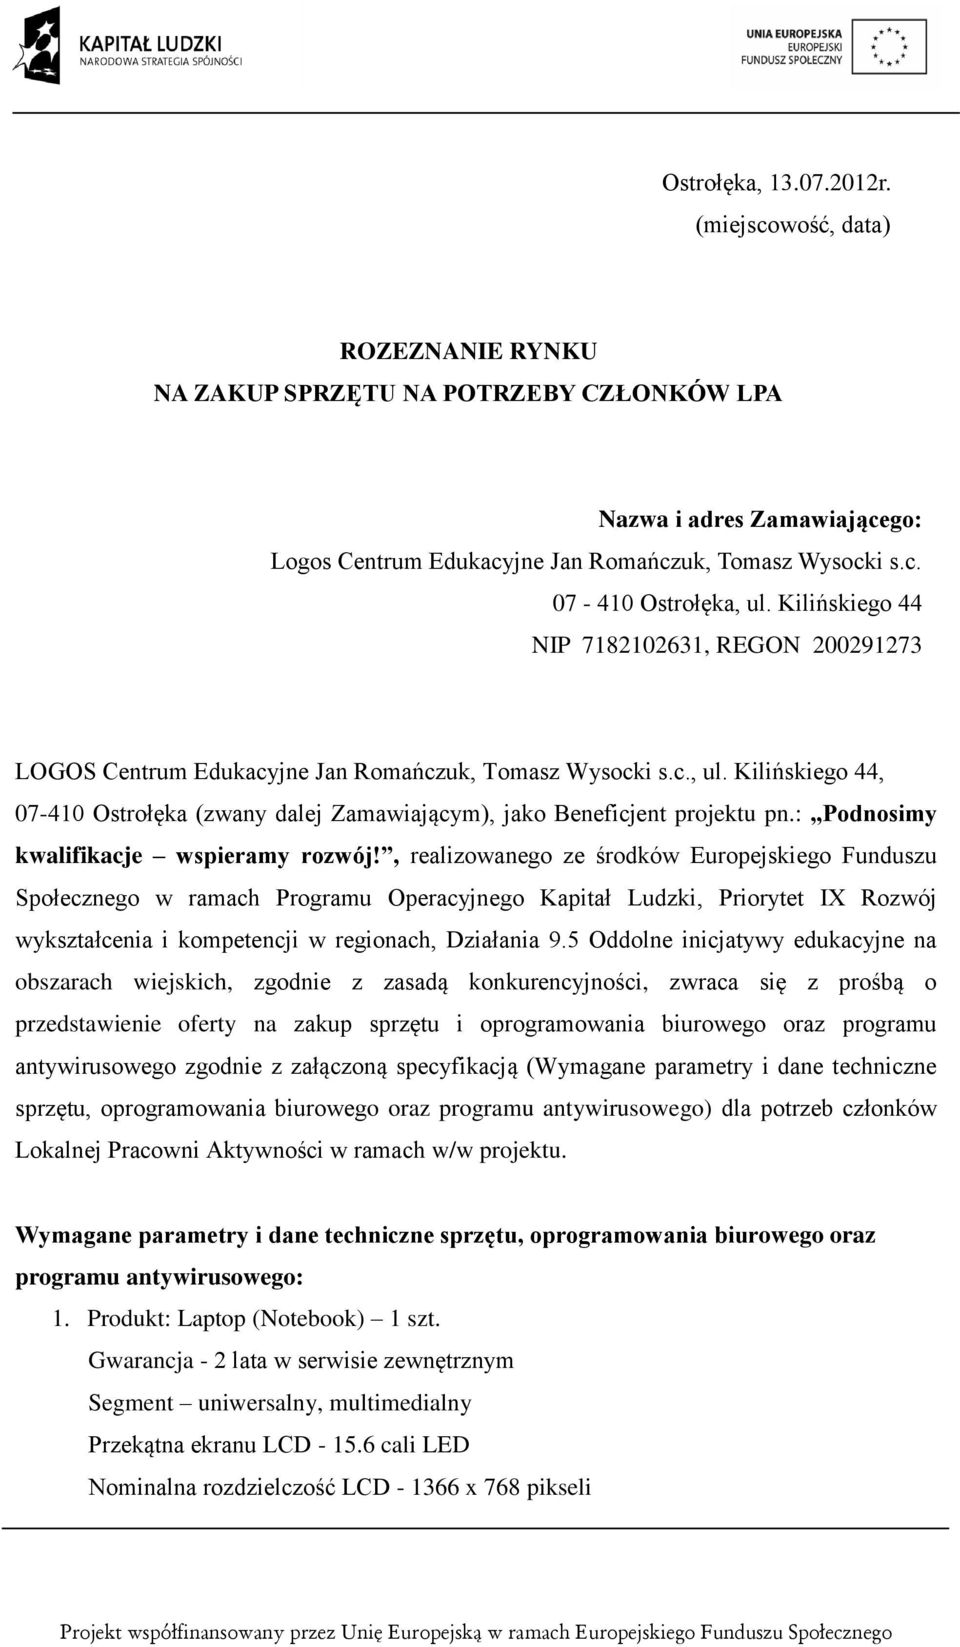 Kilińskiego 44, 07-410 Ostrołęka (zwany dalej Zamawiającym), jako Beneficjent projektu pn.: Podnosimy kwalifikacje wspieramy rozwój!